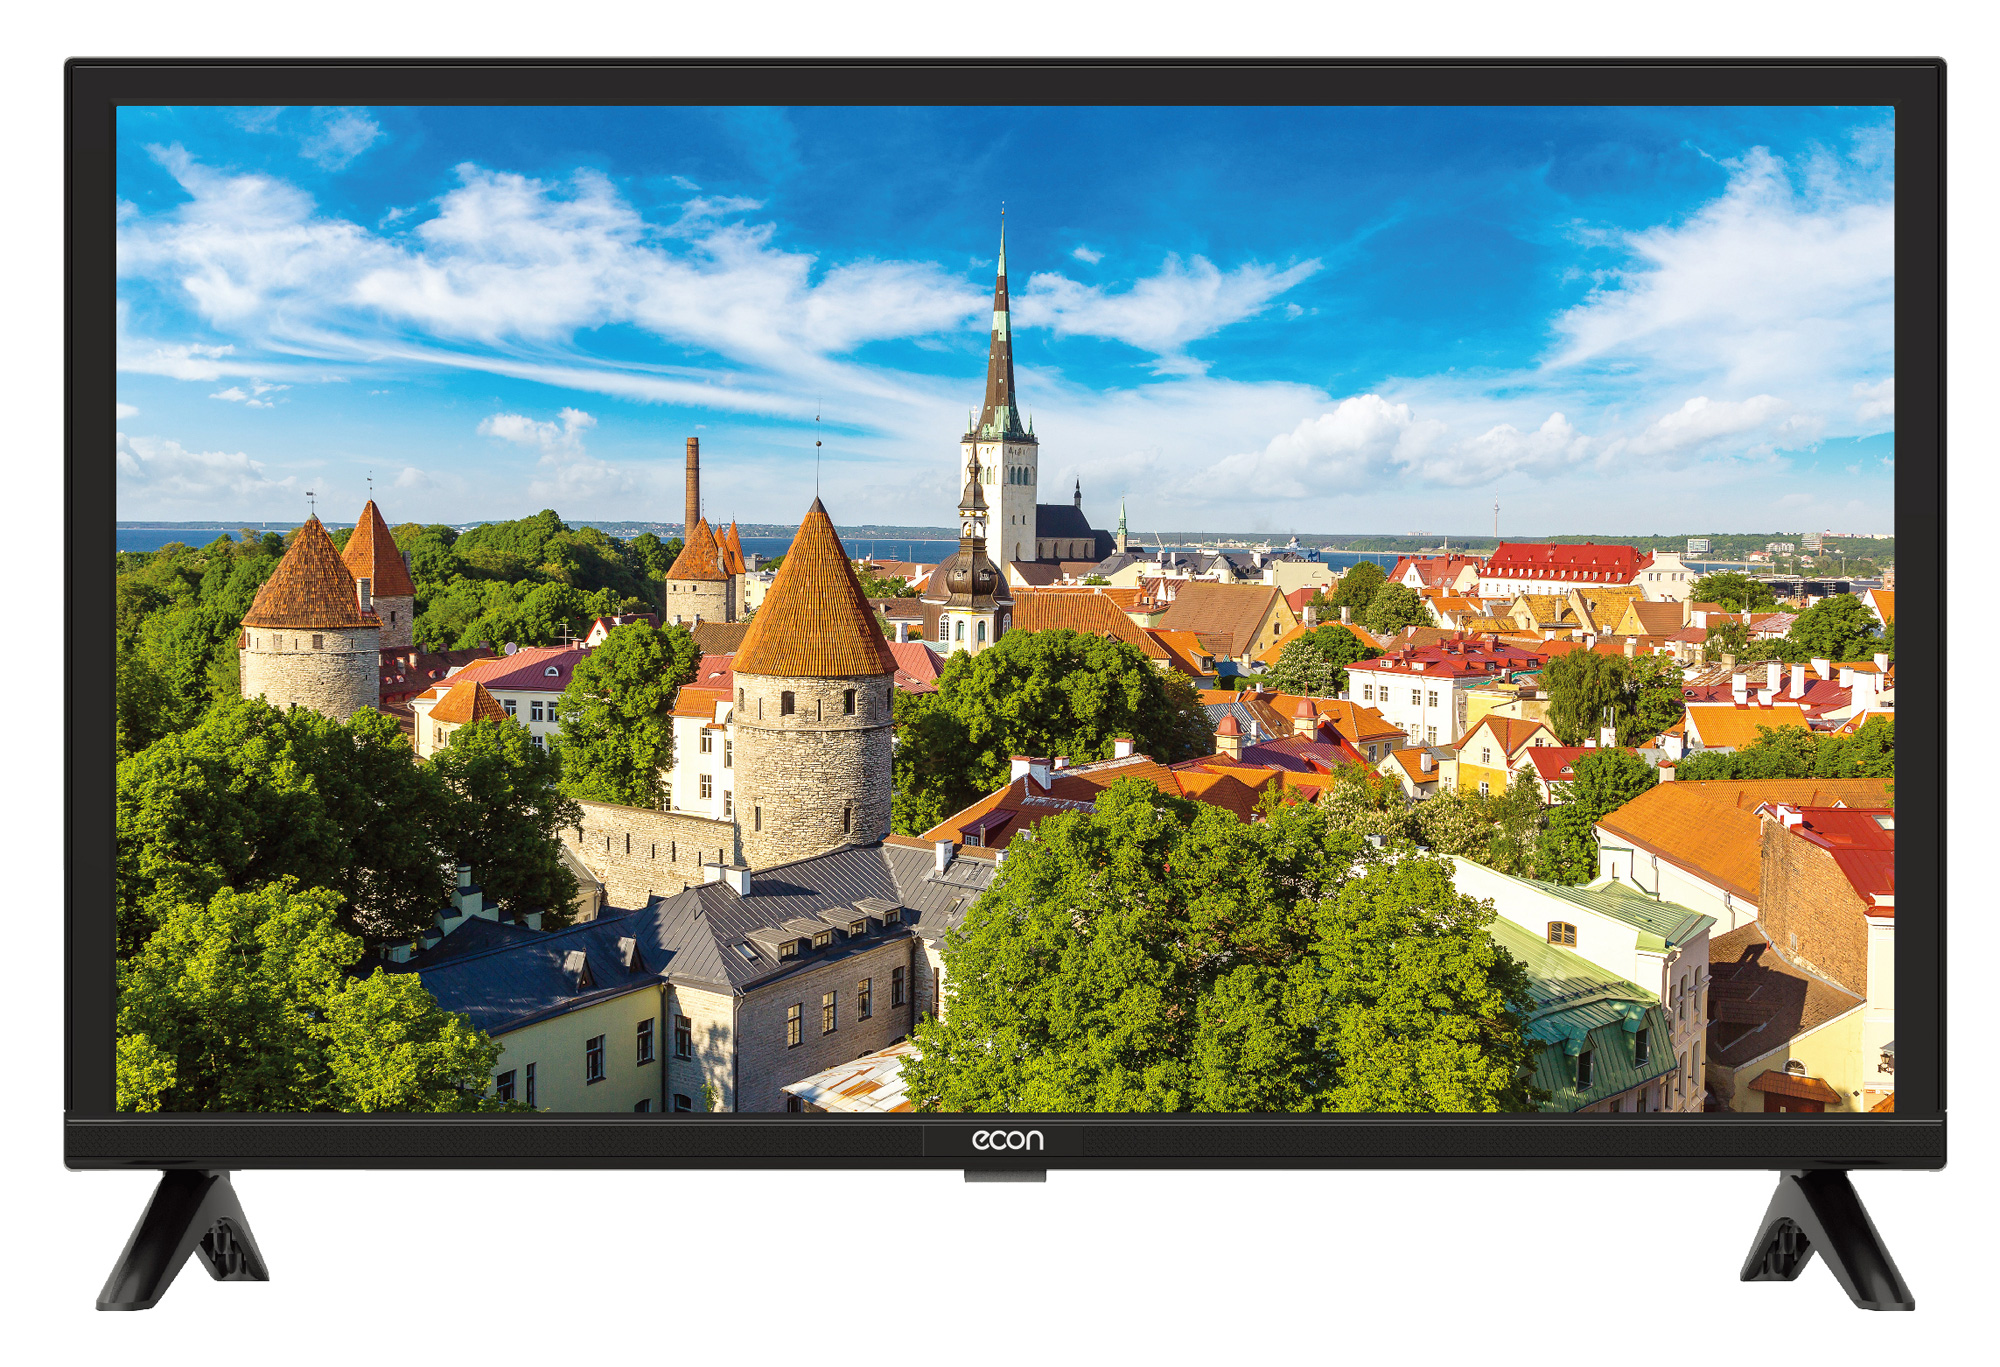 Картинка Телевизор ECON EX-24HT008B по разумной цене купить в интернет магазине mall.su